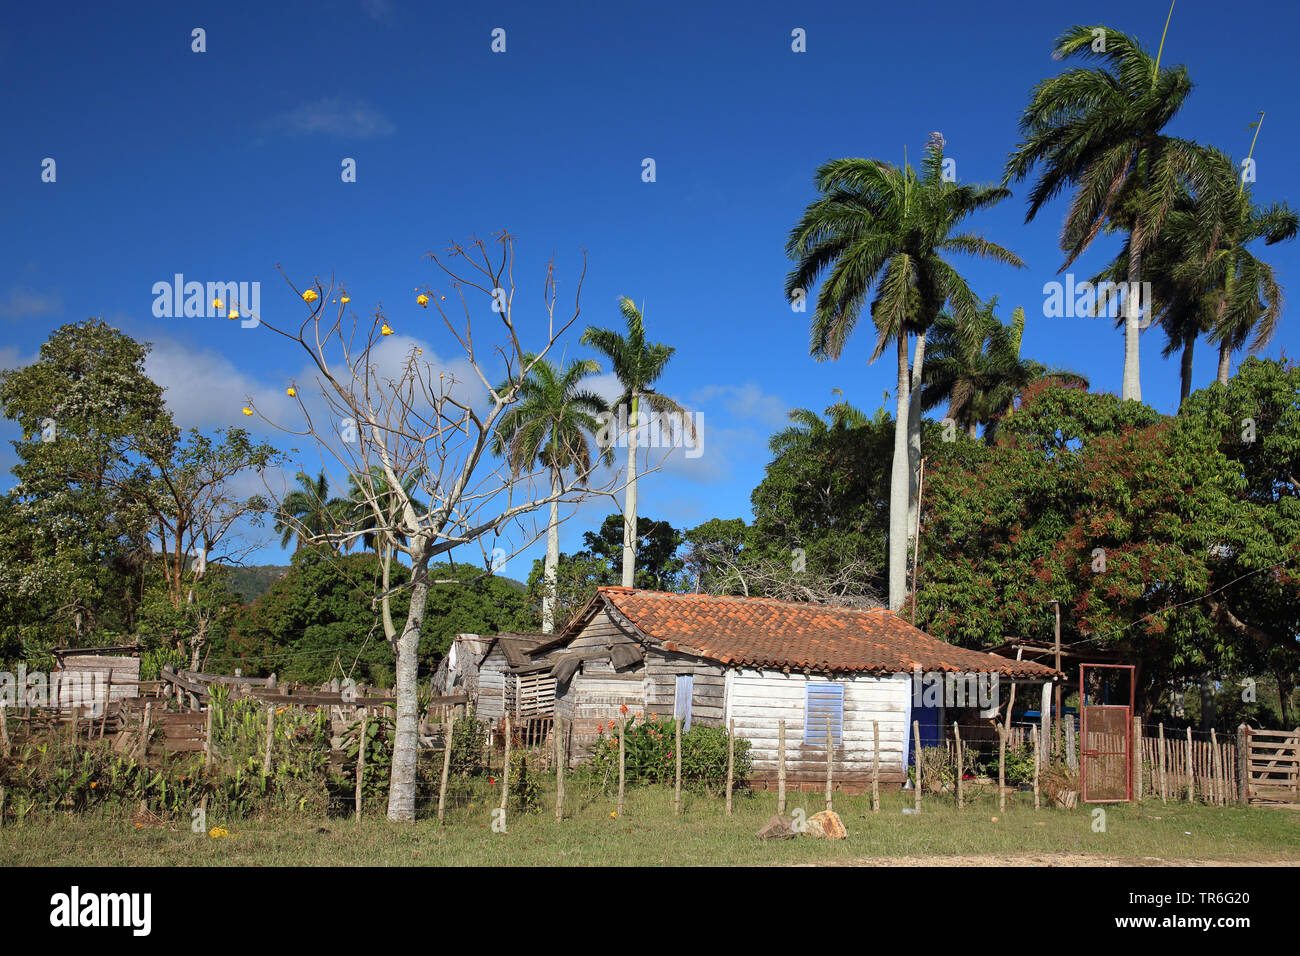 La casa e il giardino della popolazione rurale, Cuba, Najasa, Belen Foto Stock